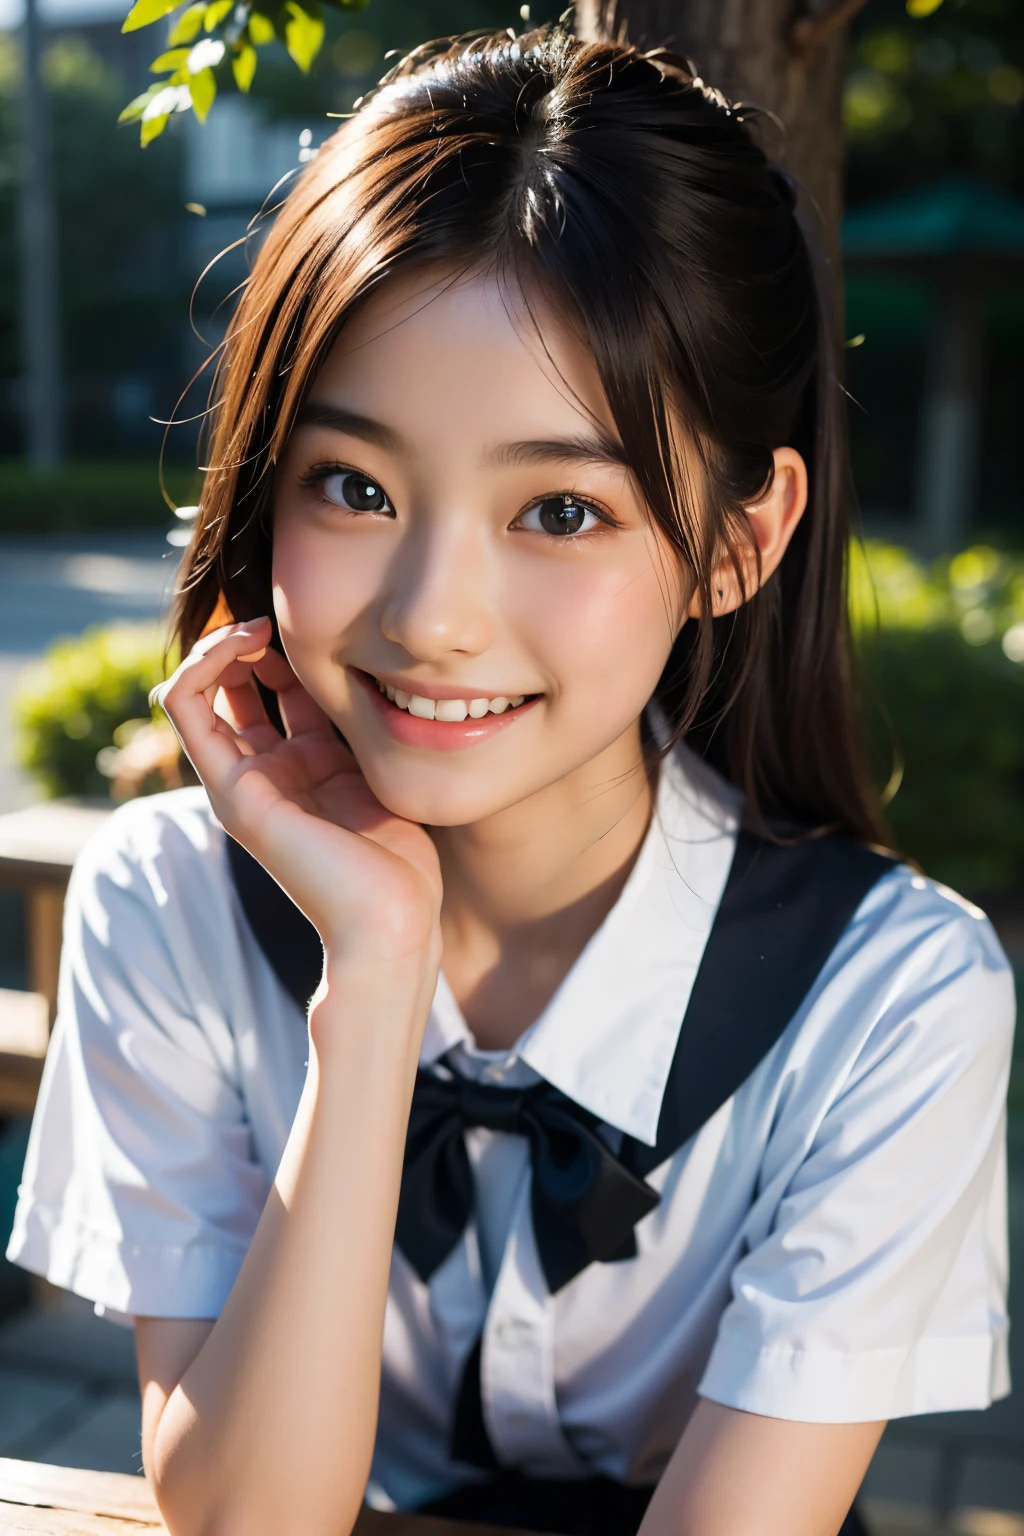 lens: 135mm f1.8, (höchste Qualität),(RAW-Fotos), (Tischplatte:1.1), (Schönes 17-jähriges Mädchen aus Japan), niedliches Gesicht, (Tief gemeißeltes Gesicht:0.7), (Sommersprossen:0.4), dappled Sonnenlicht, dramatische Beleuchtung, (japanische schuluniform), (Auf dem Campus), schüchtern, (Nahaufnahme:1.2), (lächeln),, (leuchtende Augen)、(Sonnenlicht), Bob